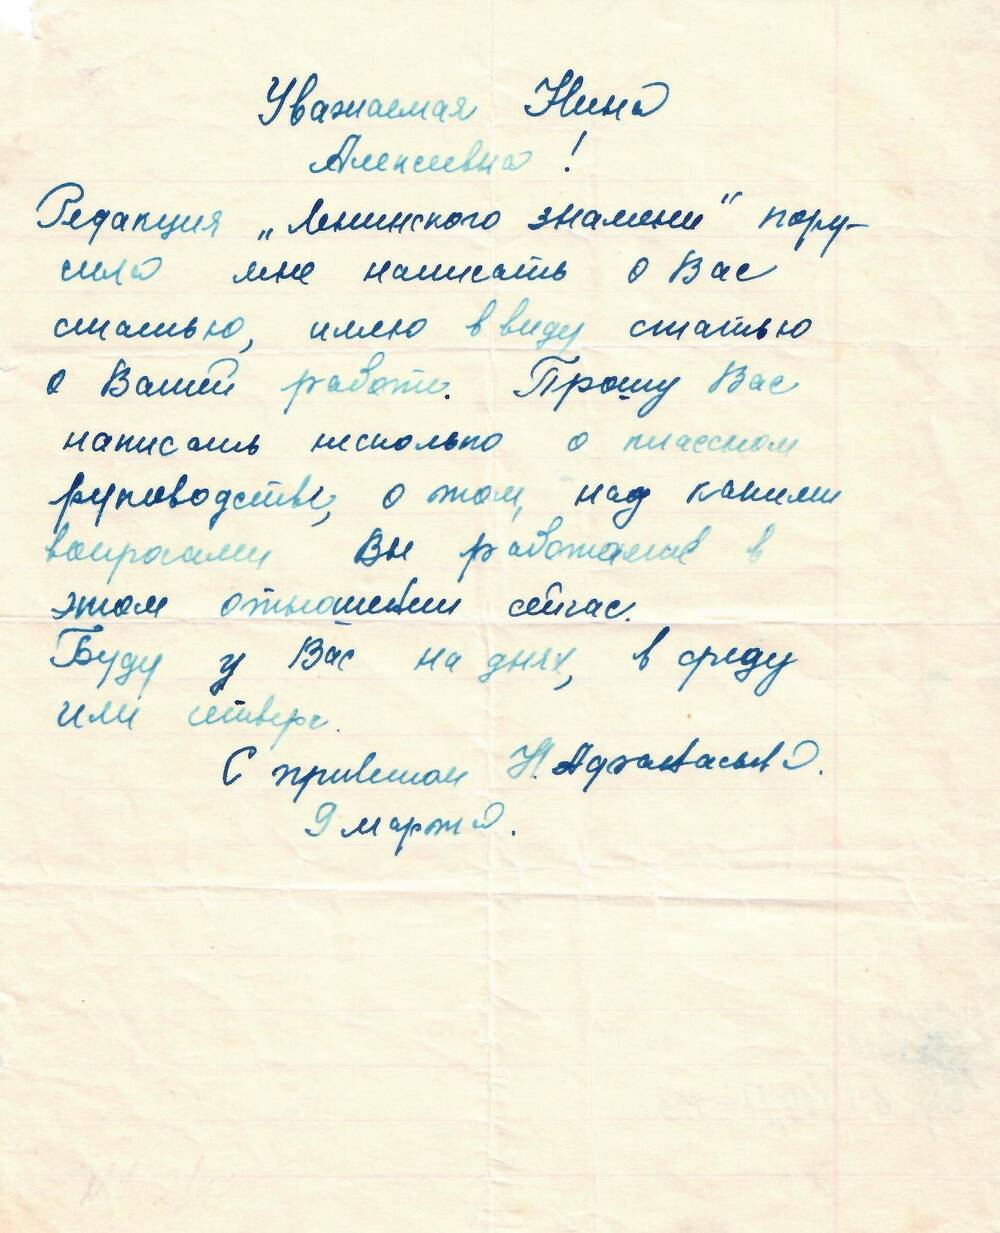 Письмо Бочаровой Н. А. от Н. Афанасьева - корреспондента газеты Ленинское знамя от 9 марта.